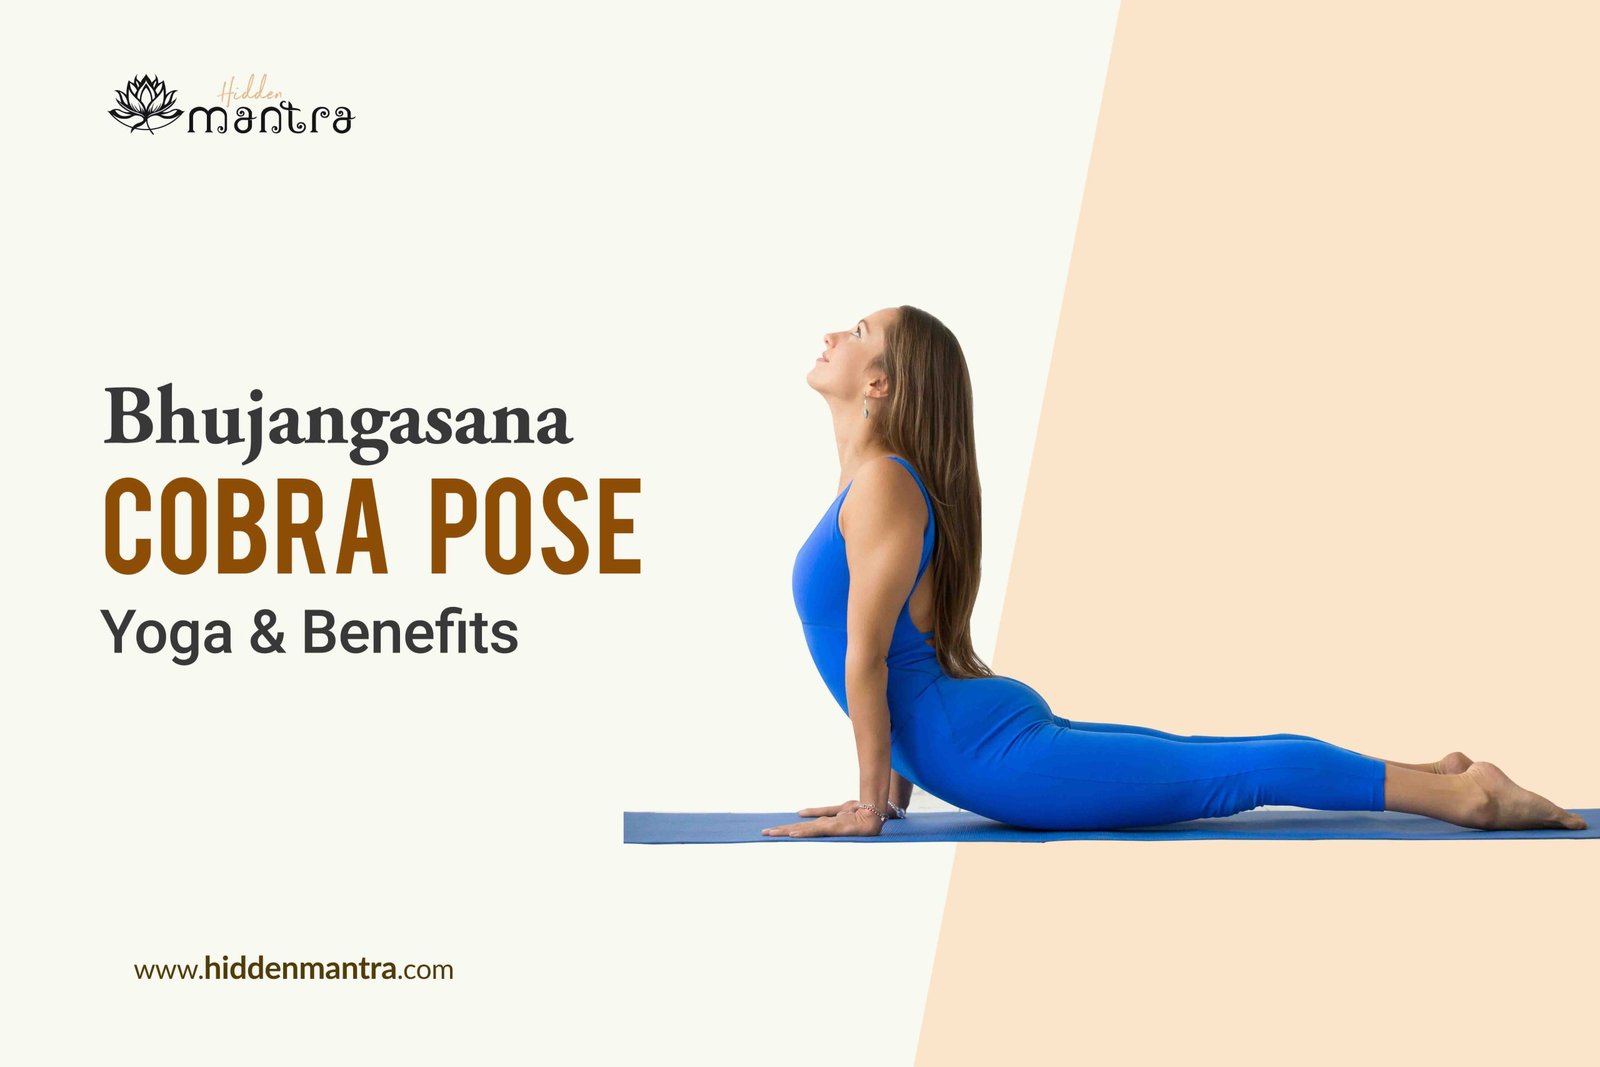 yoga for weight loss: get rid of belly fat just by doing bhujangasana in  hindi - बैली फैट से छुटकारा पाने के लिए रोजाना करें भुजंगासन, इस तरह करने  से मिलेगा फायदा,